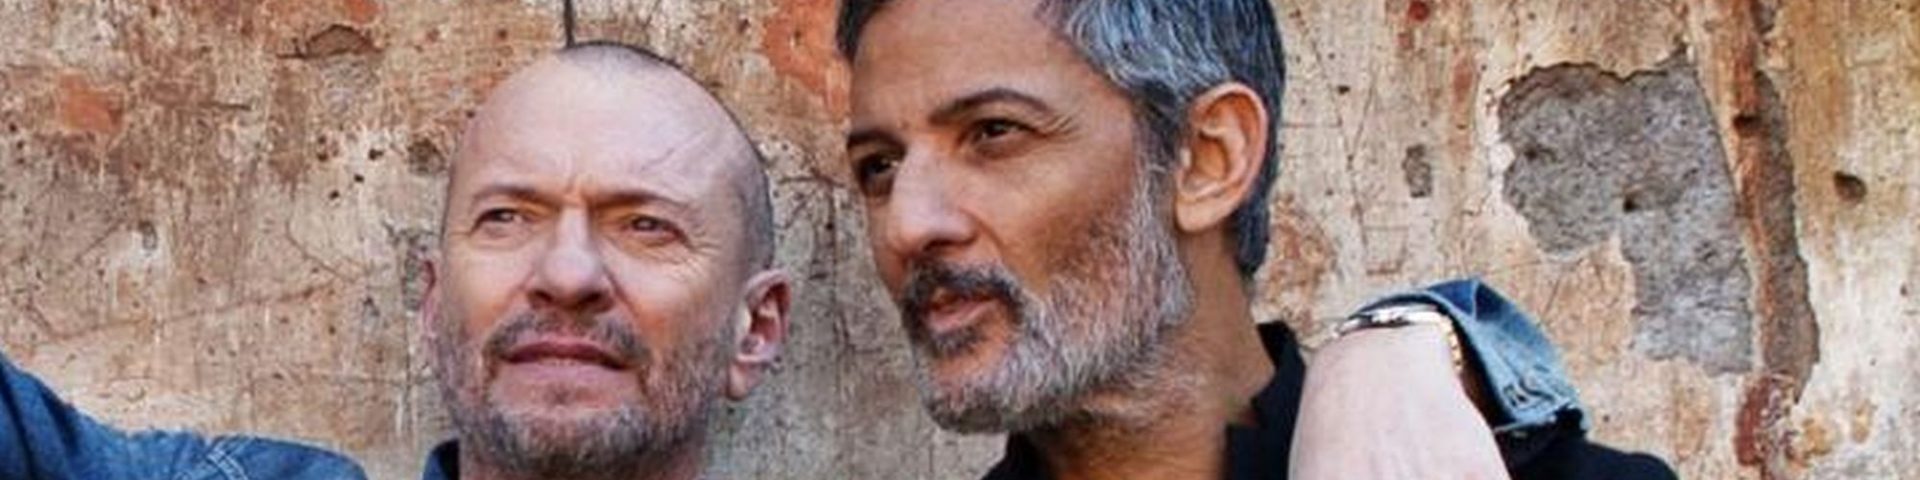 Biagio Antonacci feat. Fiorello: "Mio fratello" diventa un duetto beach version - Audio + testo